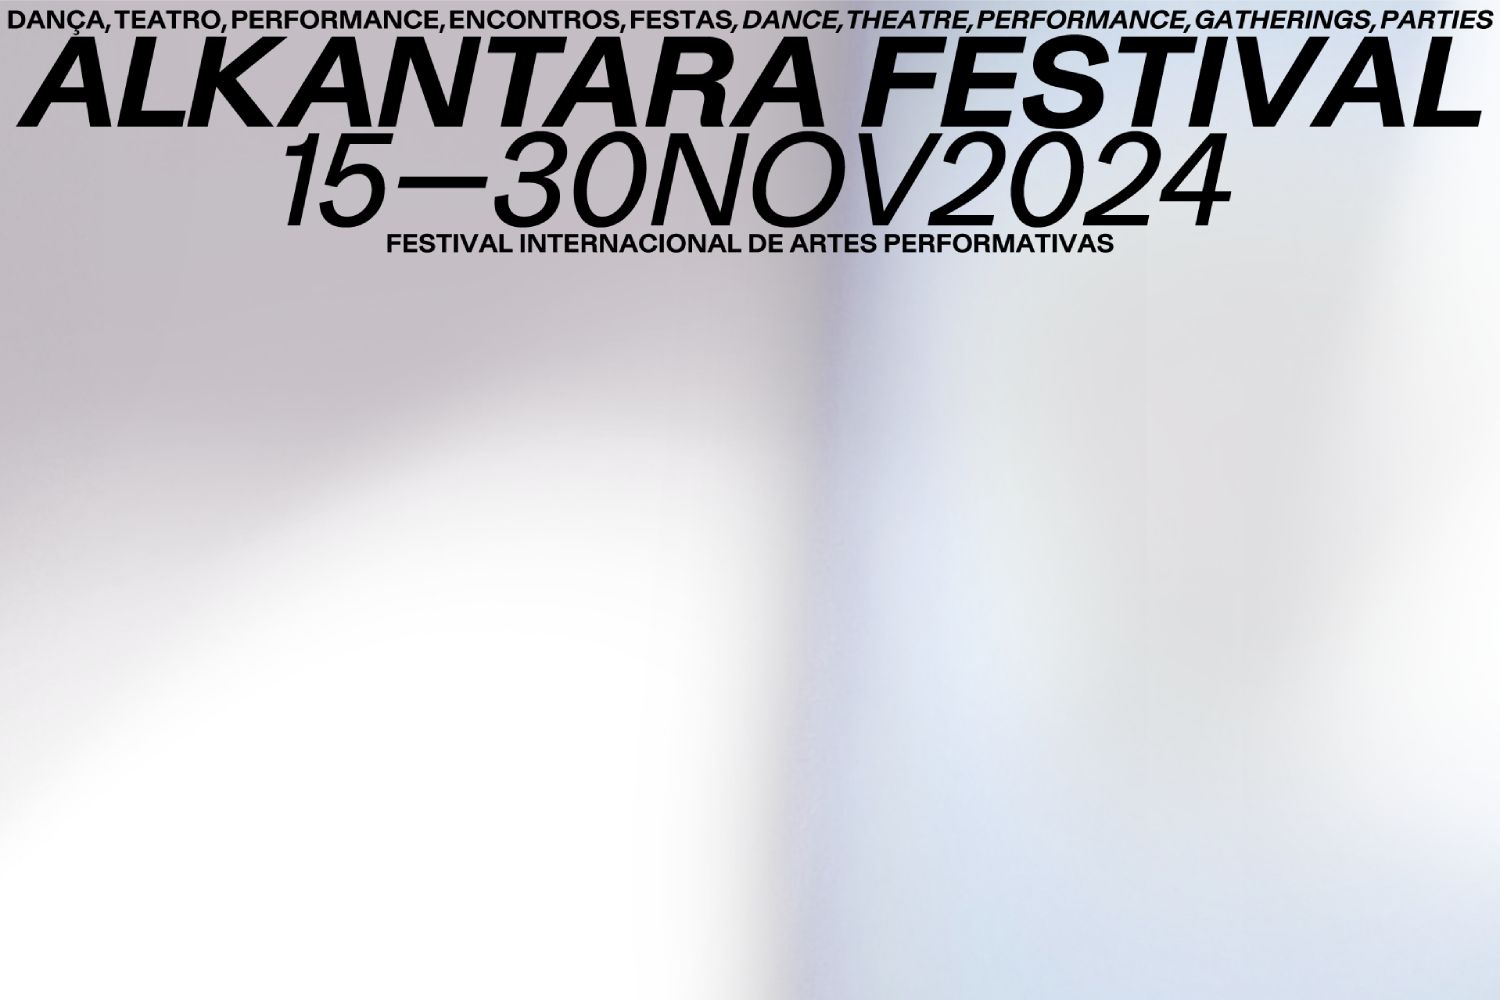 Lê-se Alkantara Festival, de 15 a 30 de novembro, sobre mancha de tons cinzas e branco, cores da identidade do festival de 2024 - ©